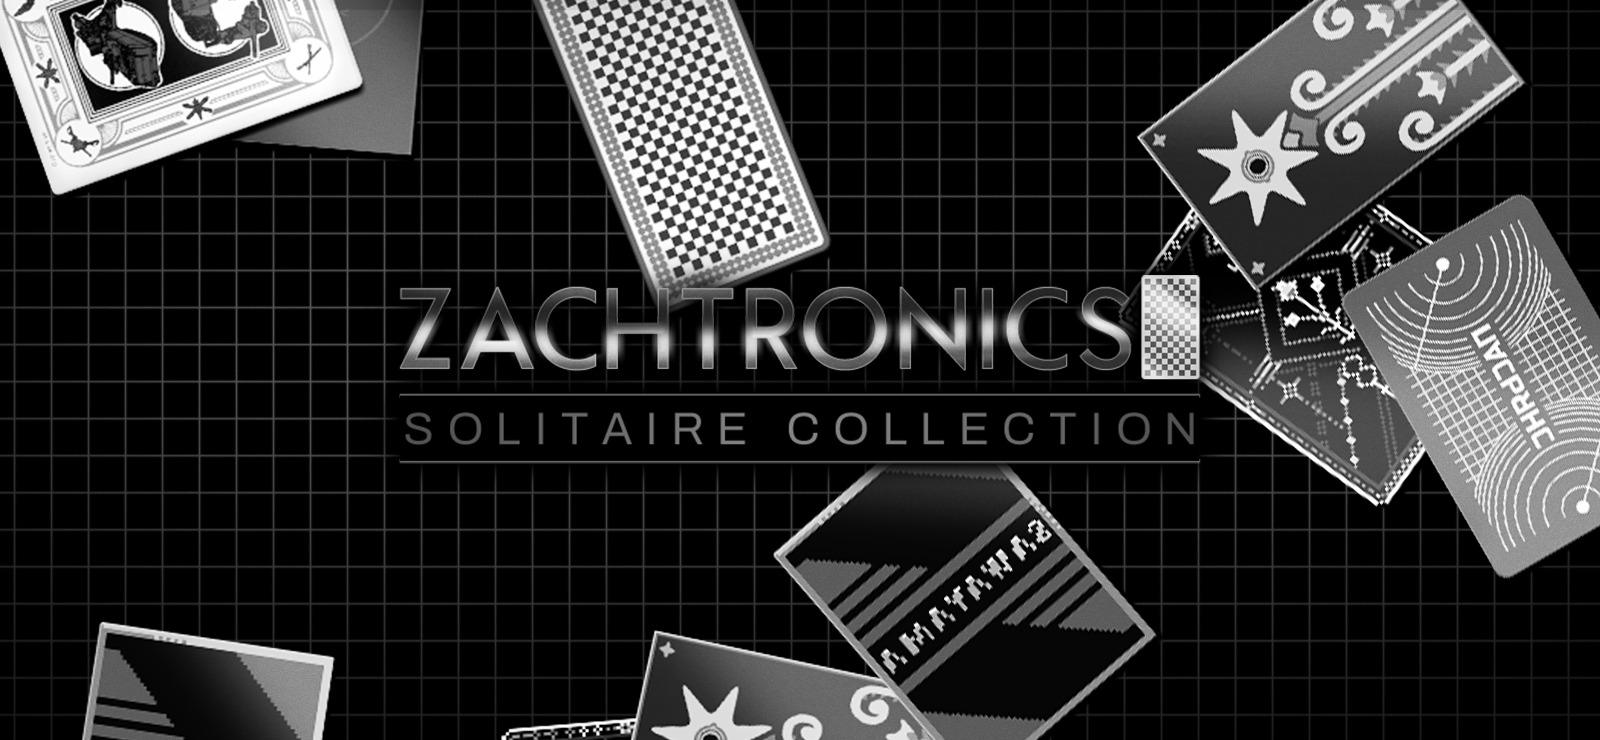 Zachtronics  The Zachtronics Solitaire Collection